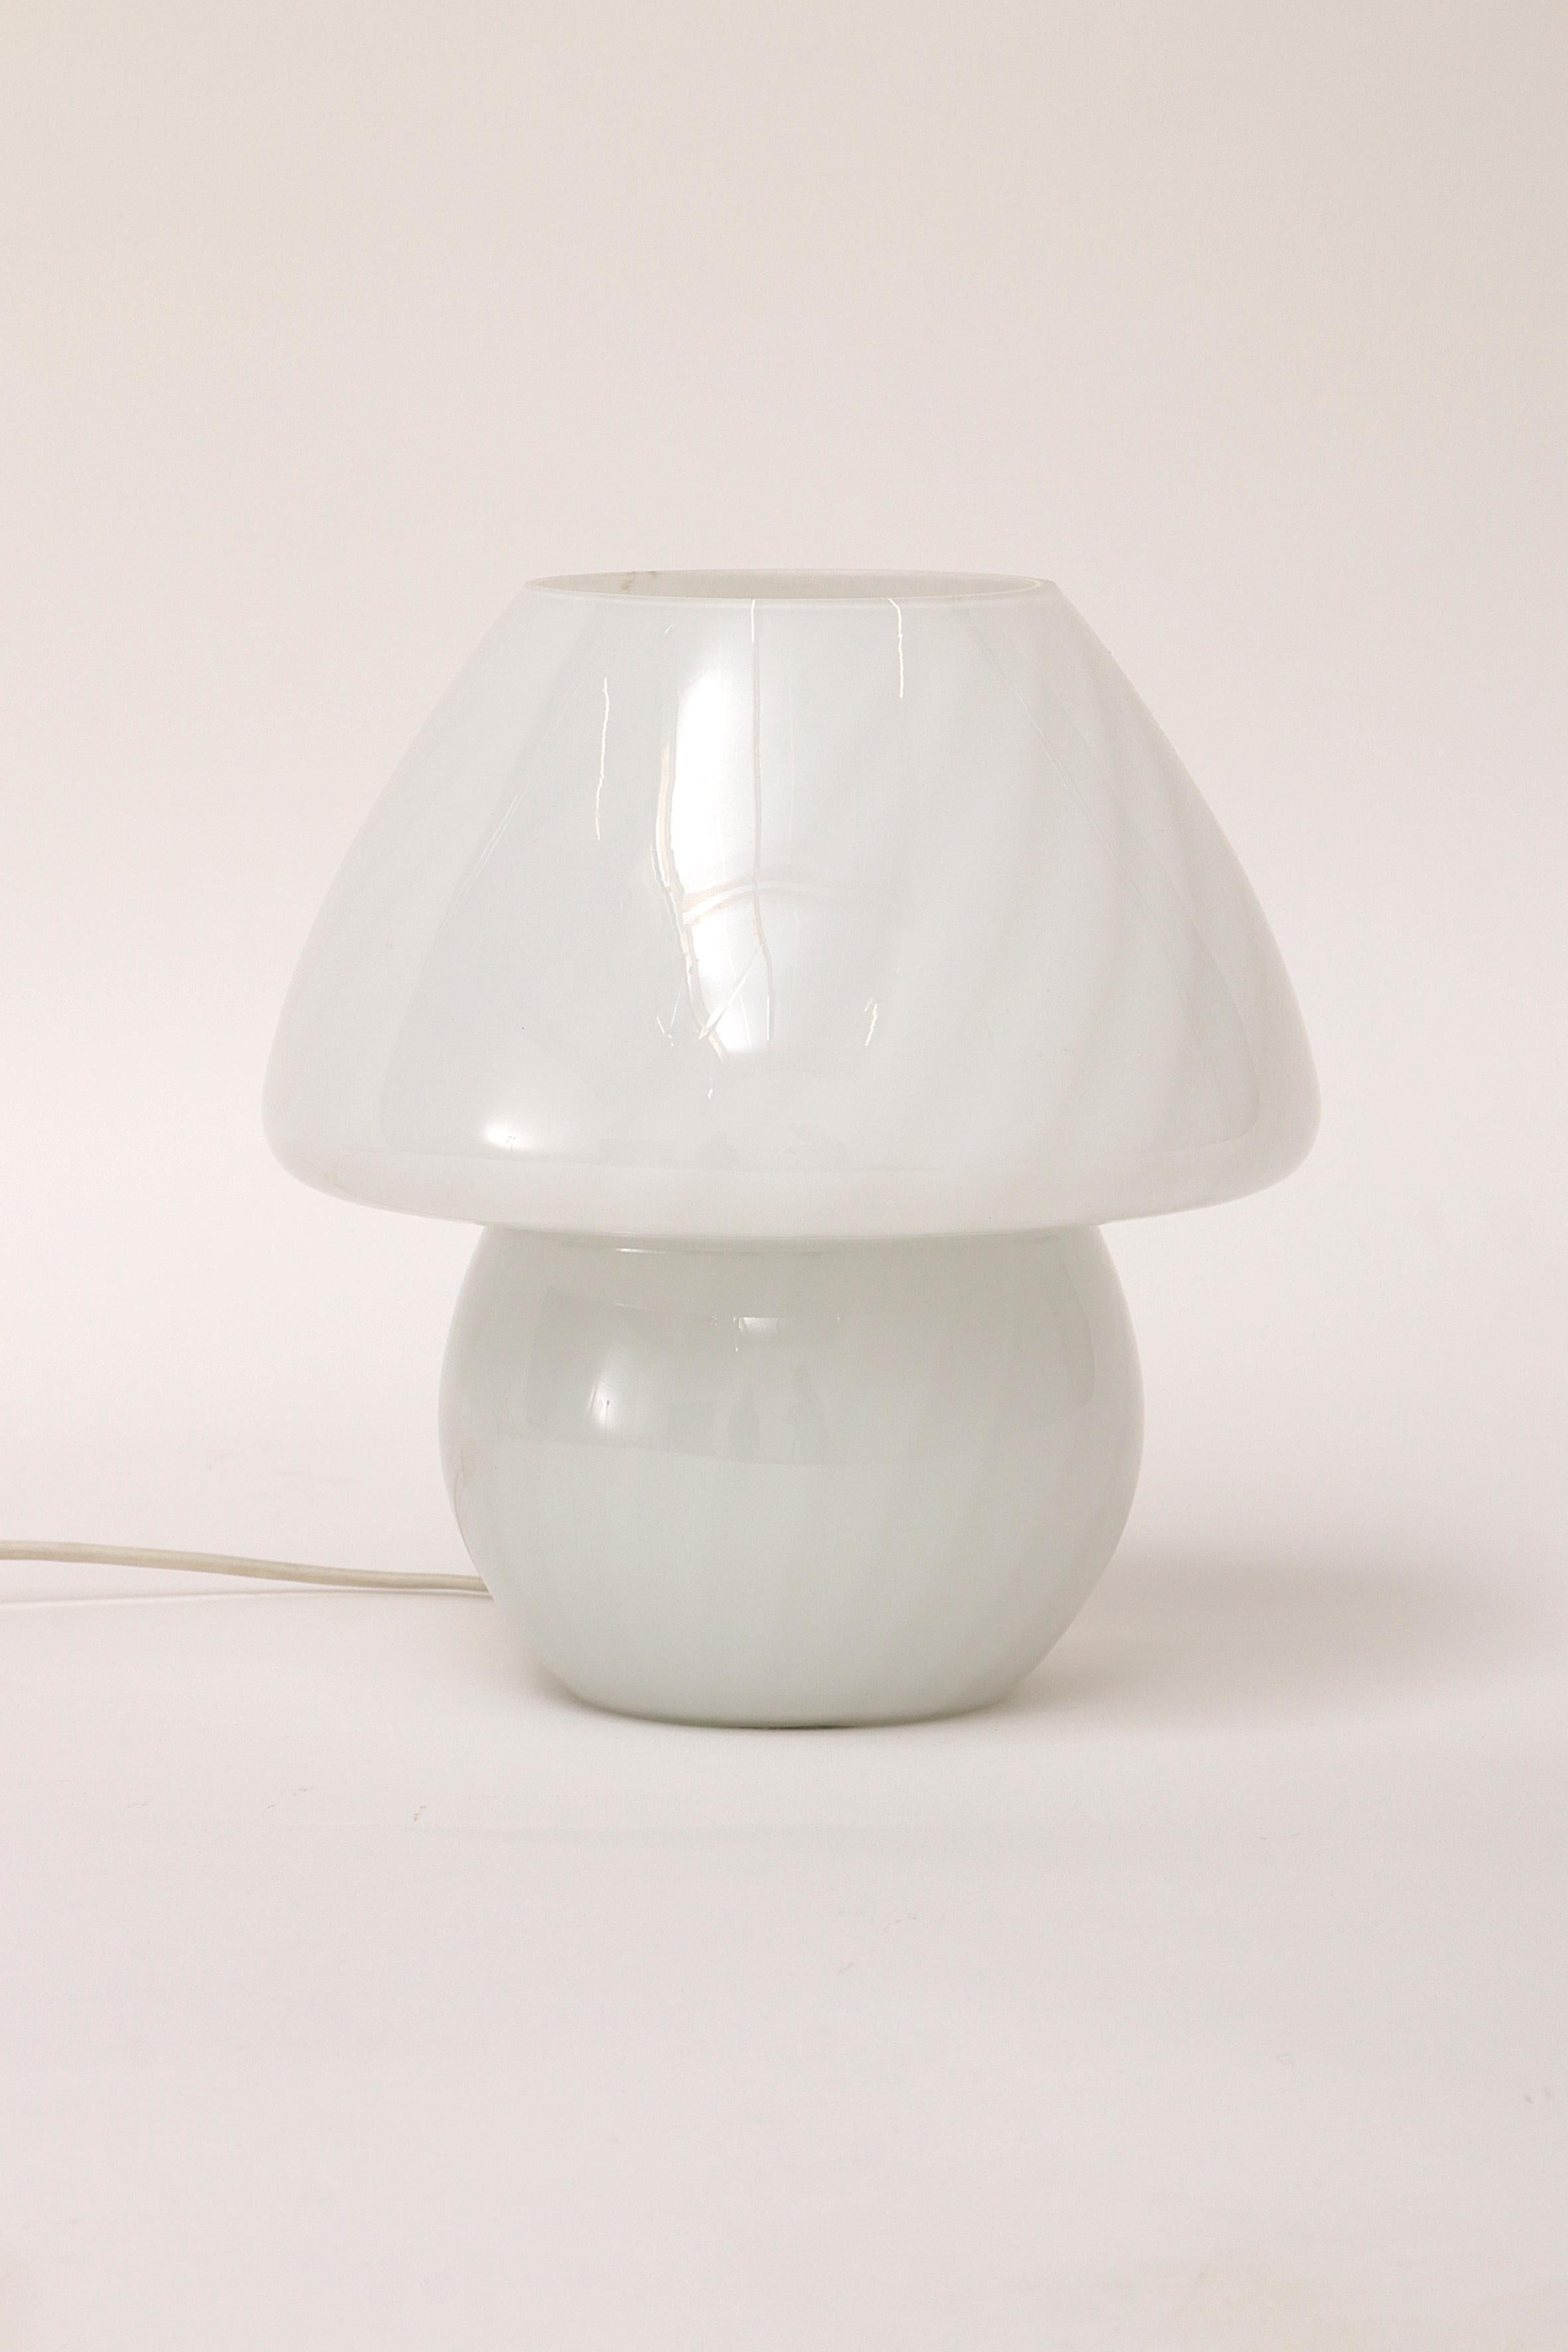 Magnifique lampe champignon avec une belle lumière fabriquée par Glashutte Allemagne dans les années 1960.

Elle est lumineuse sans être éblouissante. Avec une belle lumière douce et un interrupteur.

Et projette la lumière sur le plafond à travers